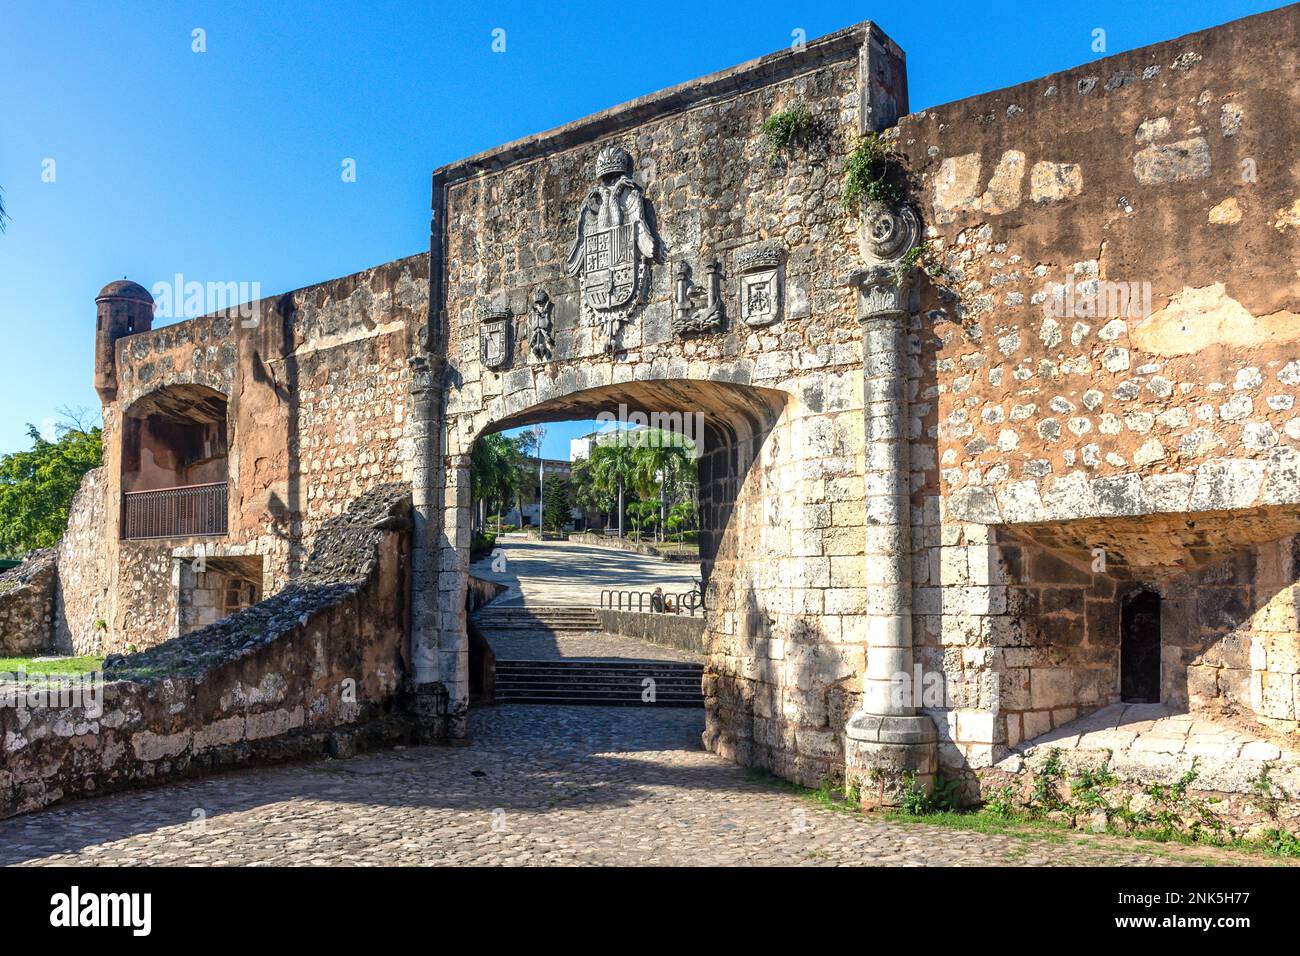 Porte d'entrée, Fuerte el Invencible, Saint-Domingue, République dominicaine (Republica Dominicana), grandes Antilles, Caraïbes Banque D'Images